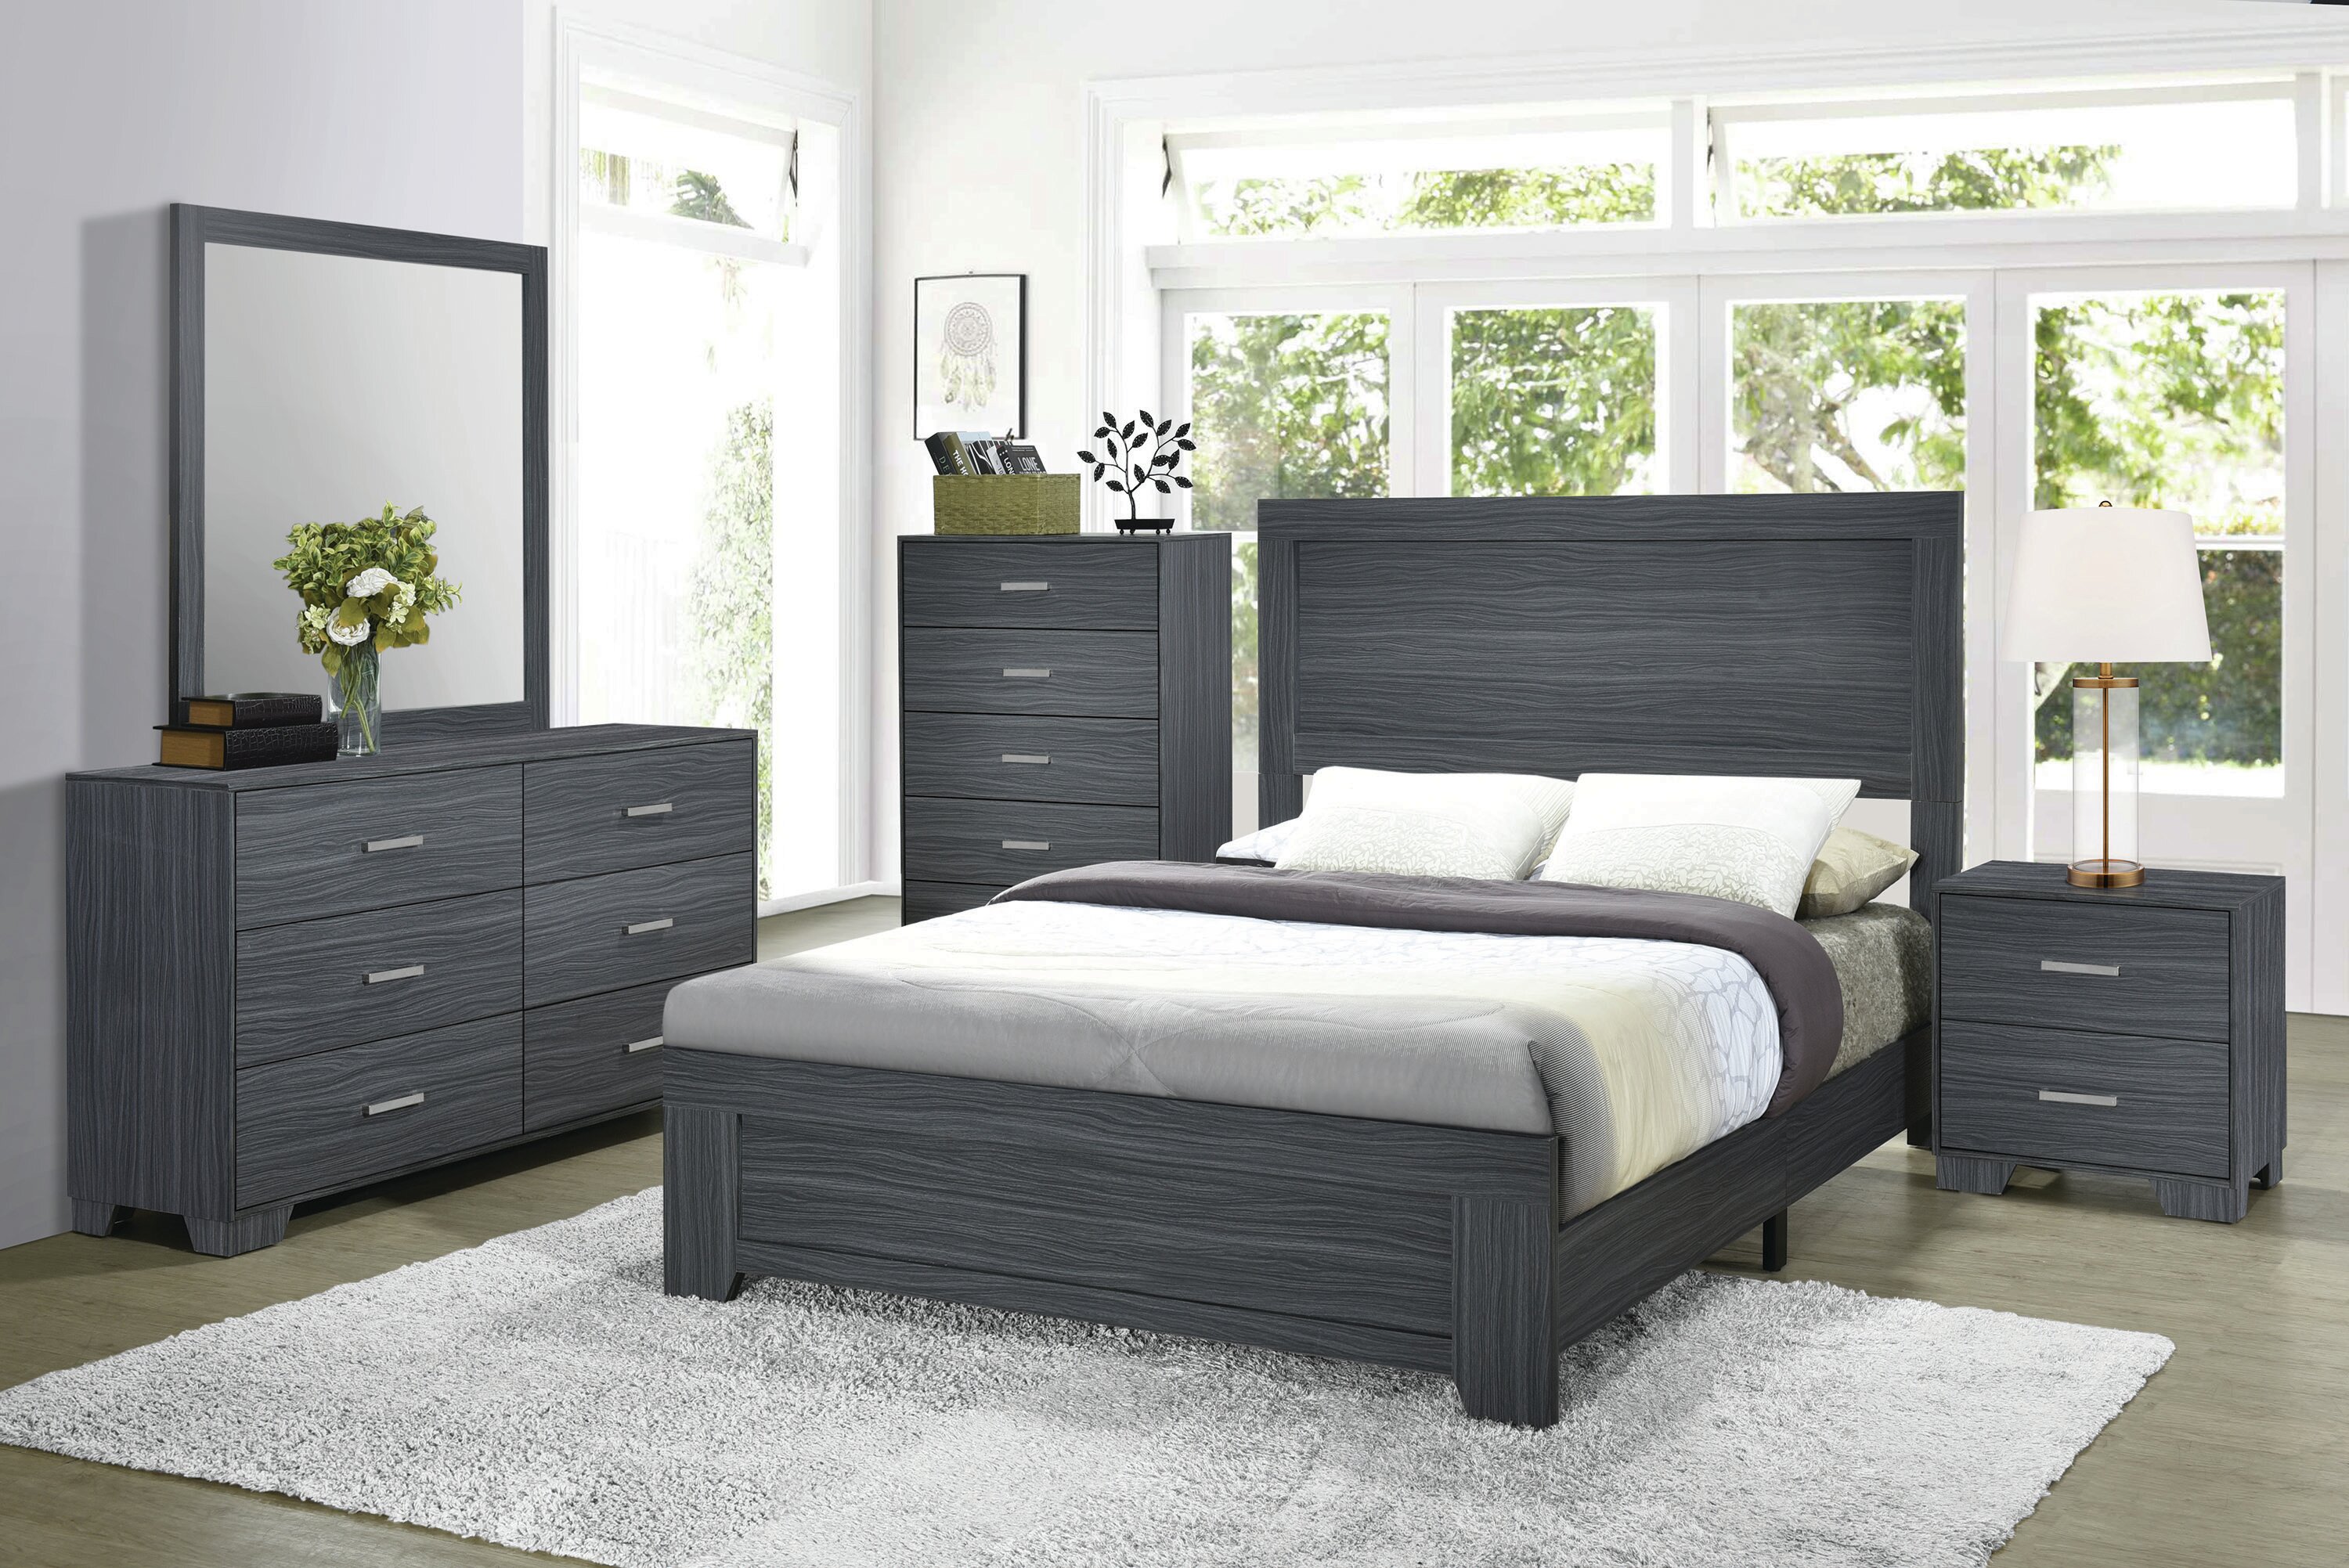 Orren Ellis Sanket Standard Configurable Bedroom Set Reviews Wayfair Ca